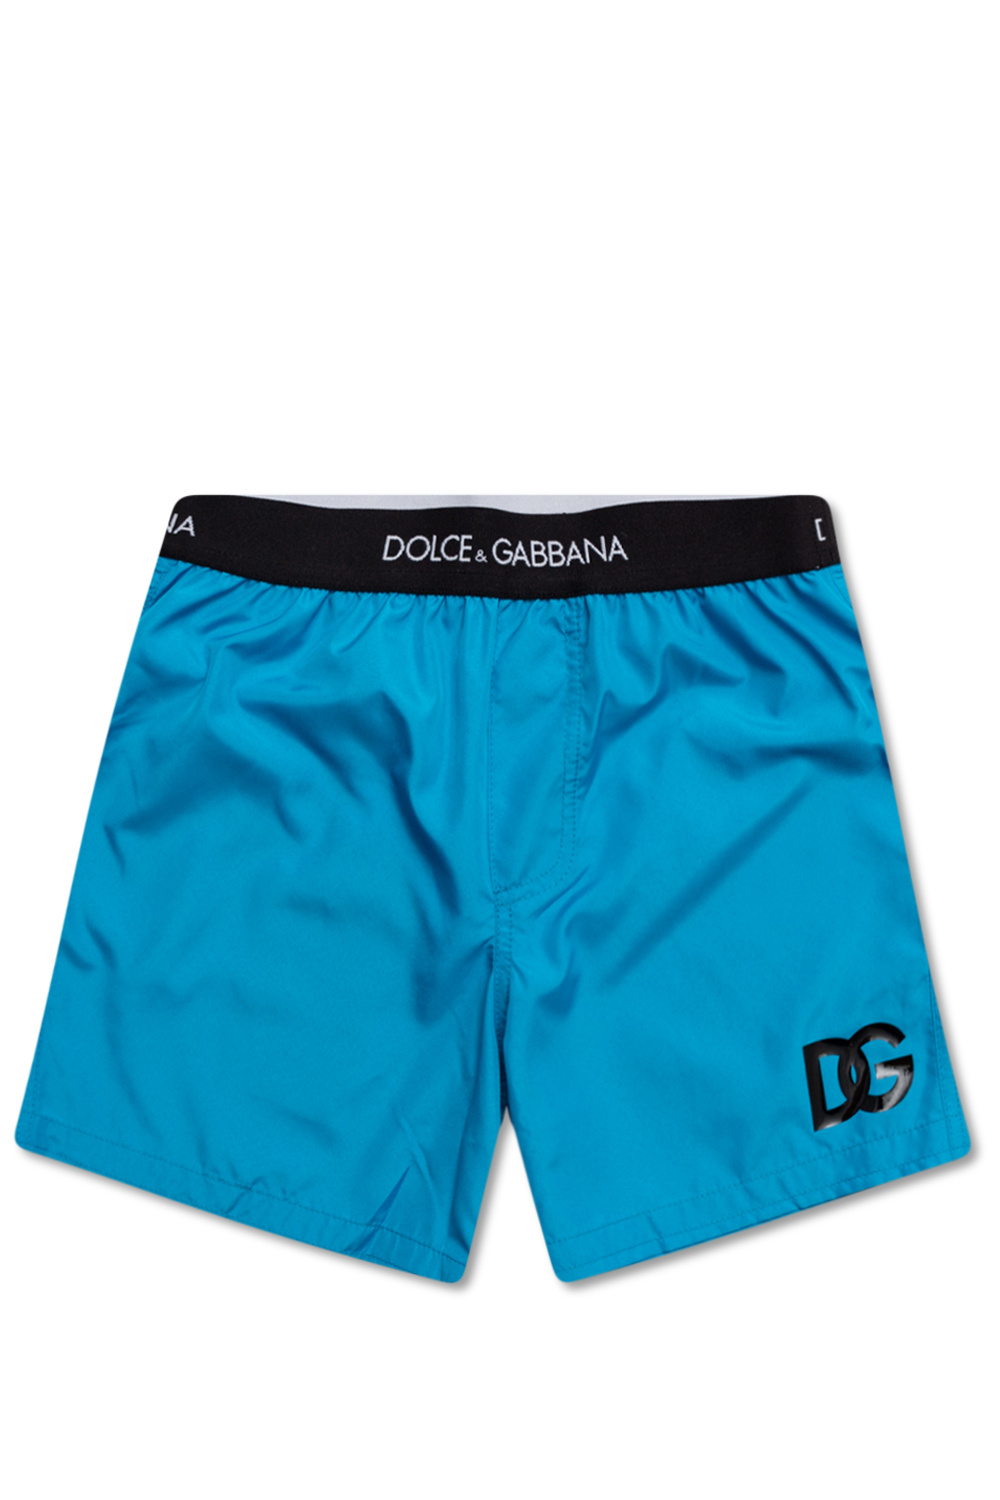 Dolce & Gabbana Kids Portofino print ballerina shoes Swim shorts